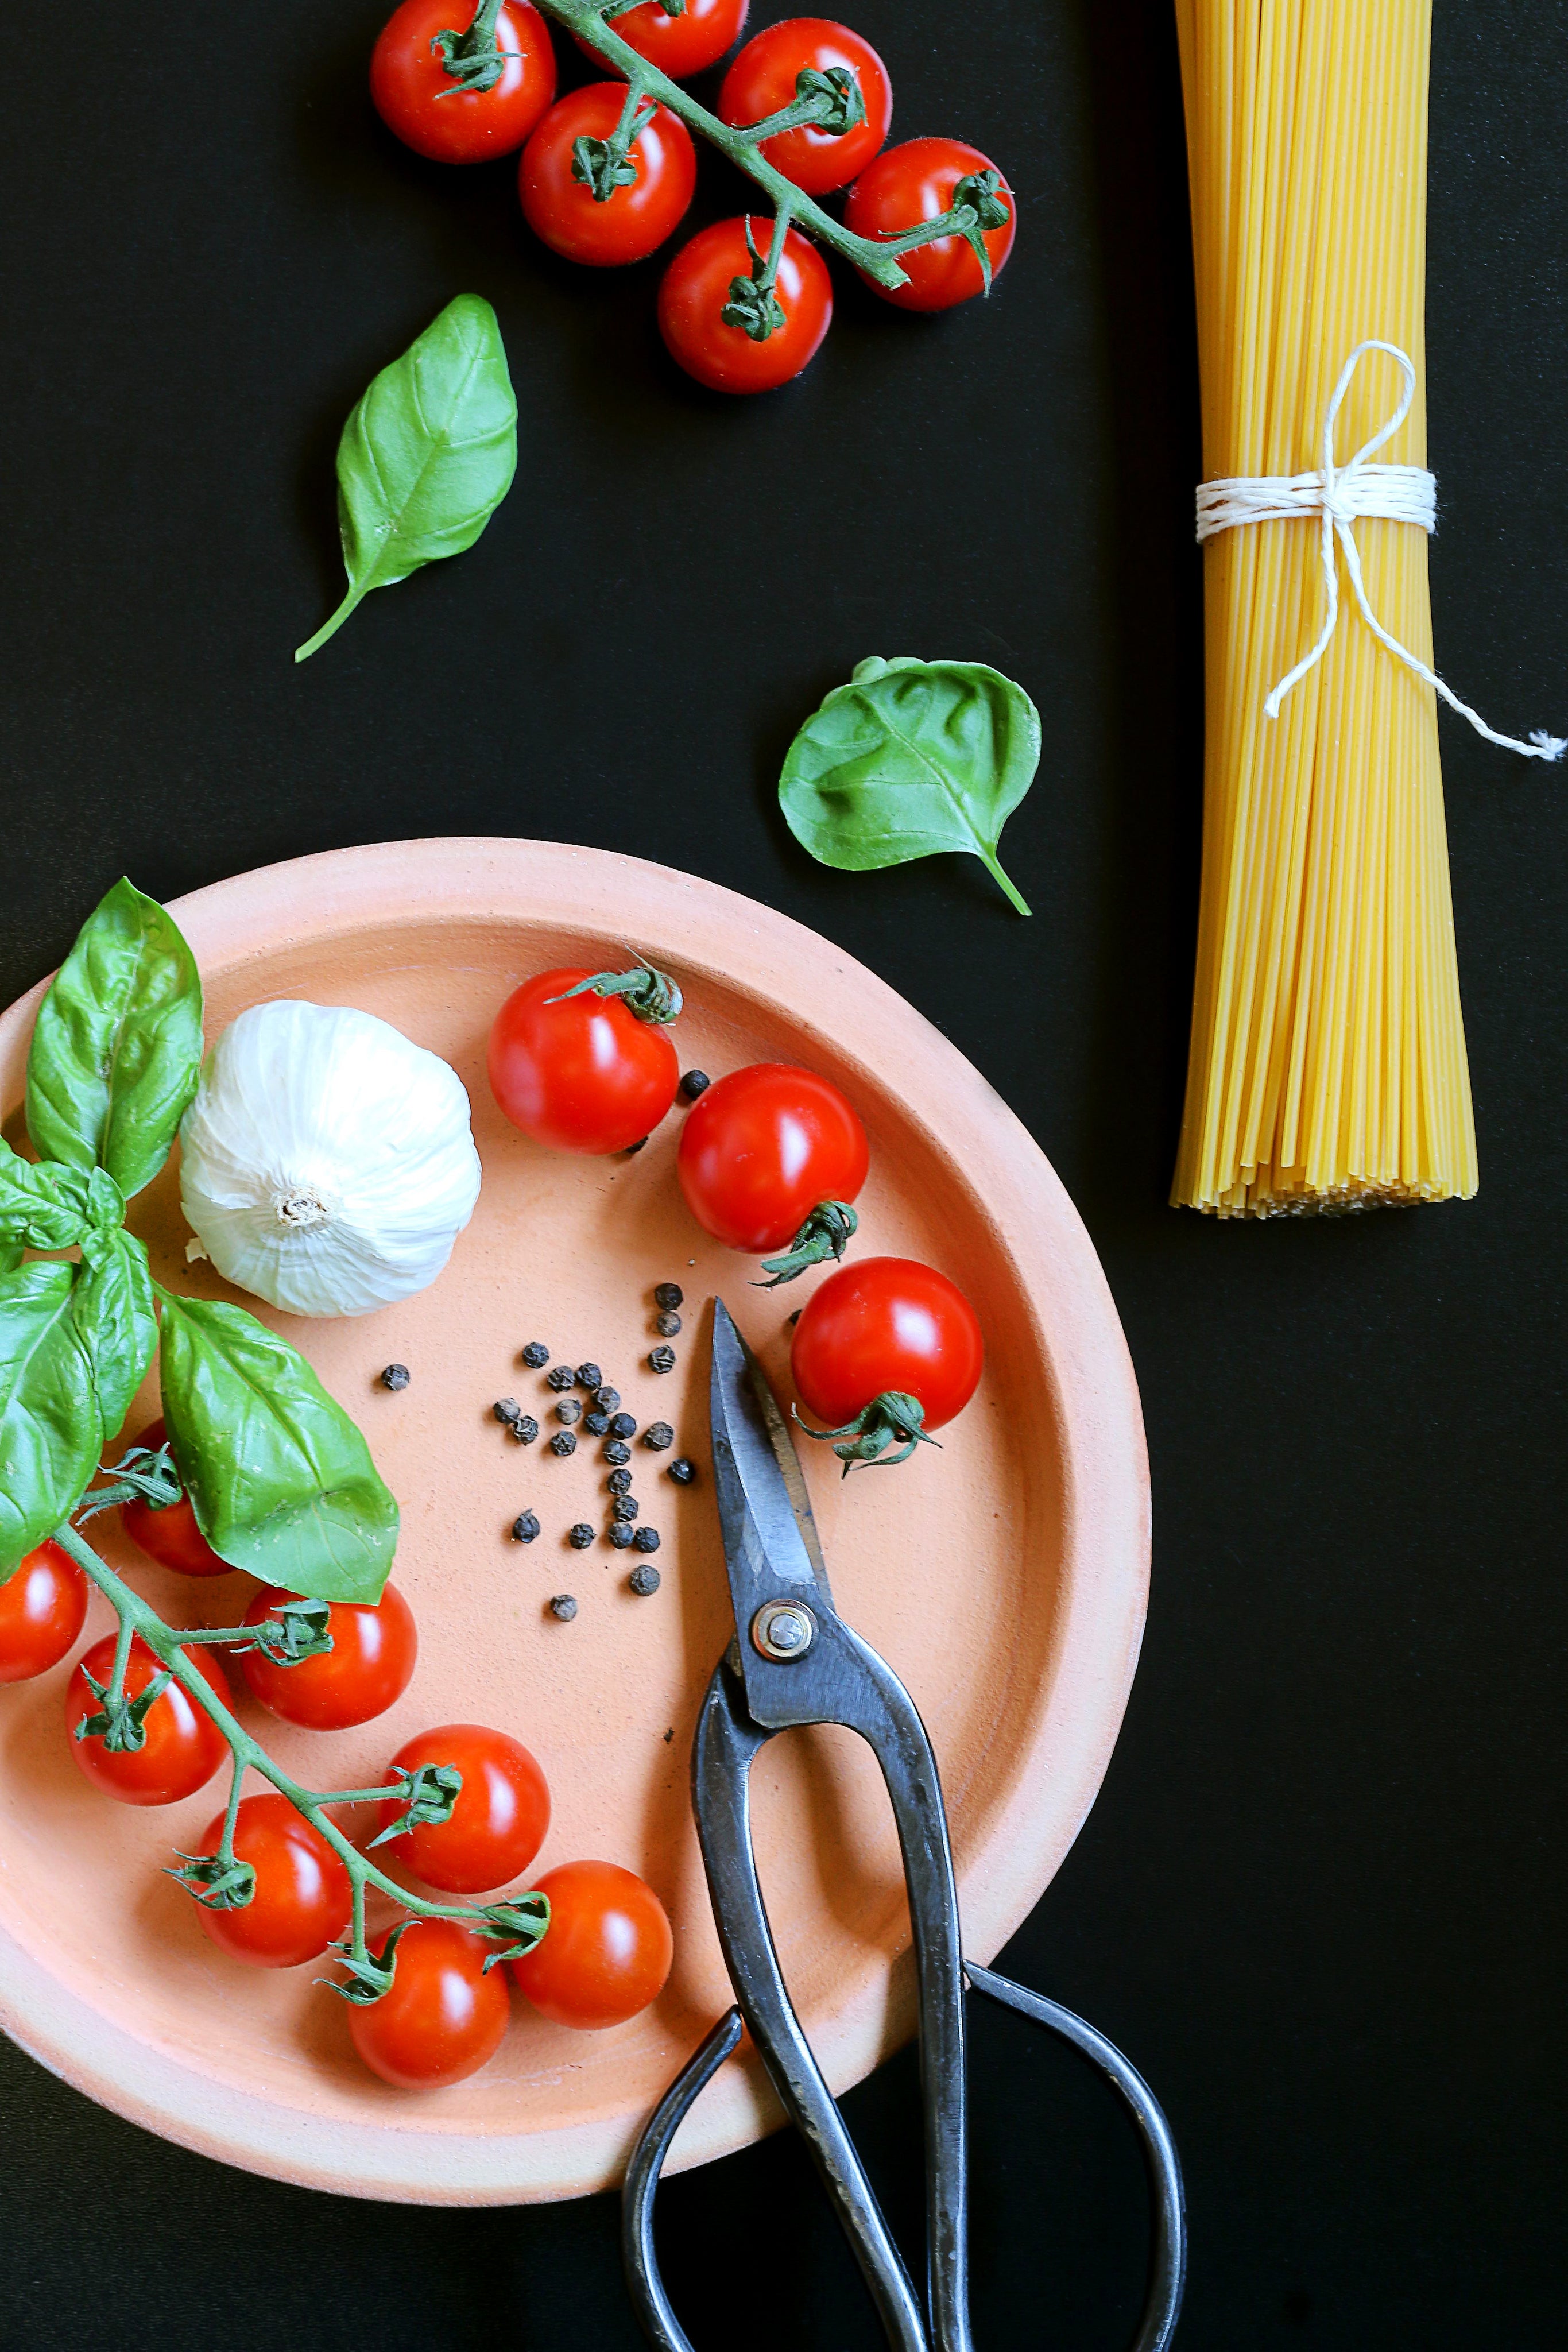 Cocinando con Hierro Fundido: Beneficios para ti y tu cocina – Amercook  Europe